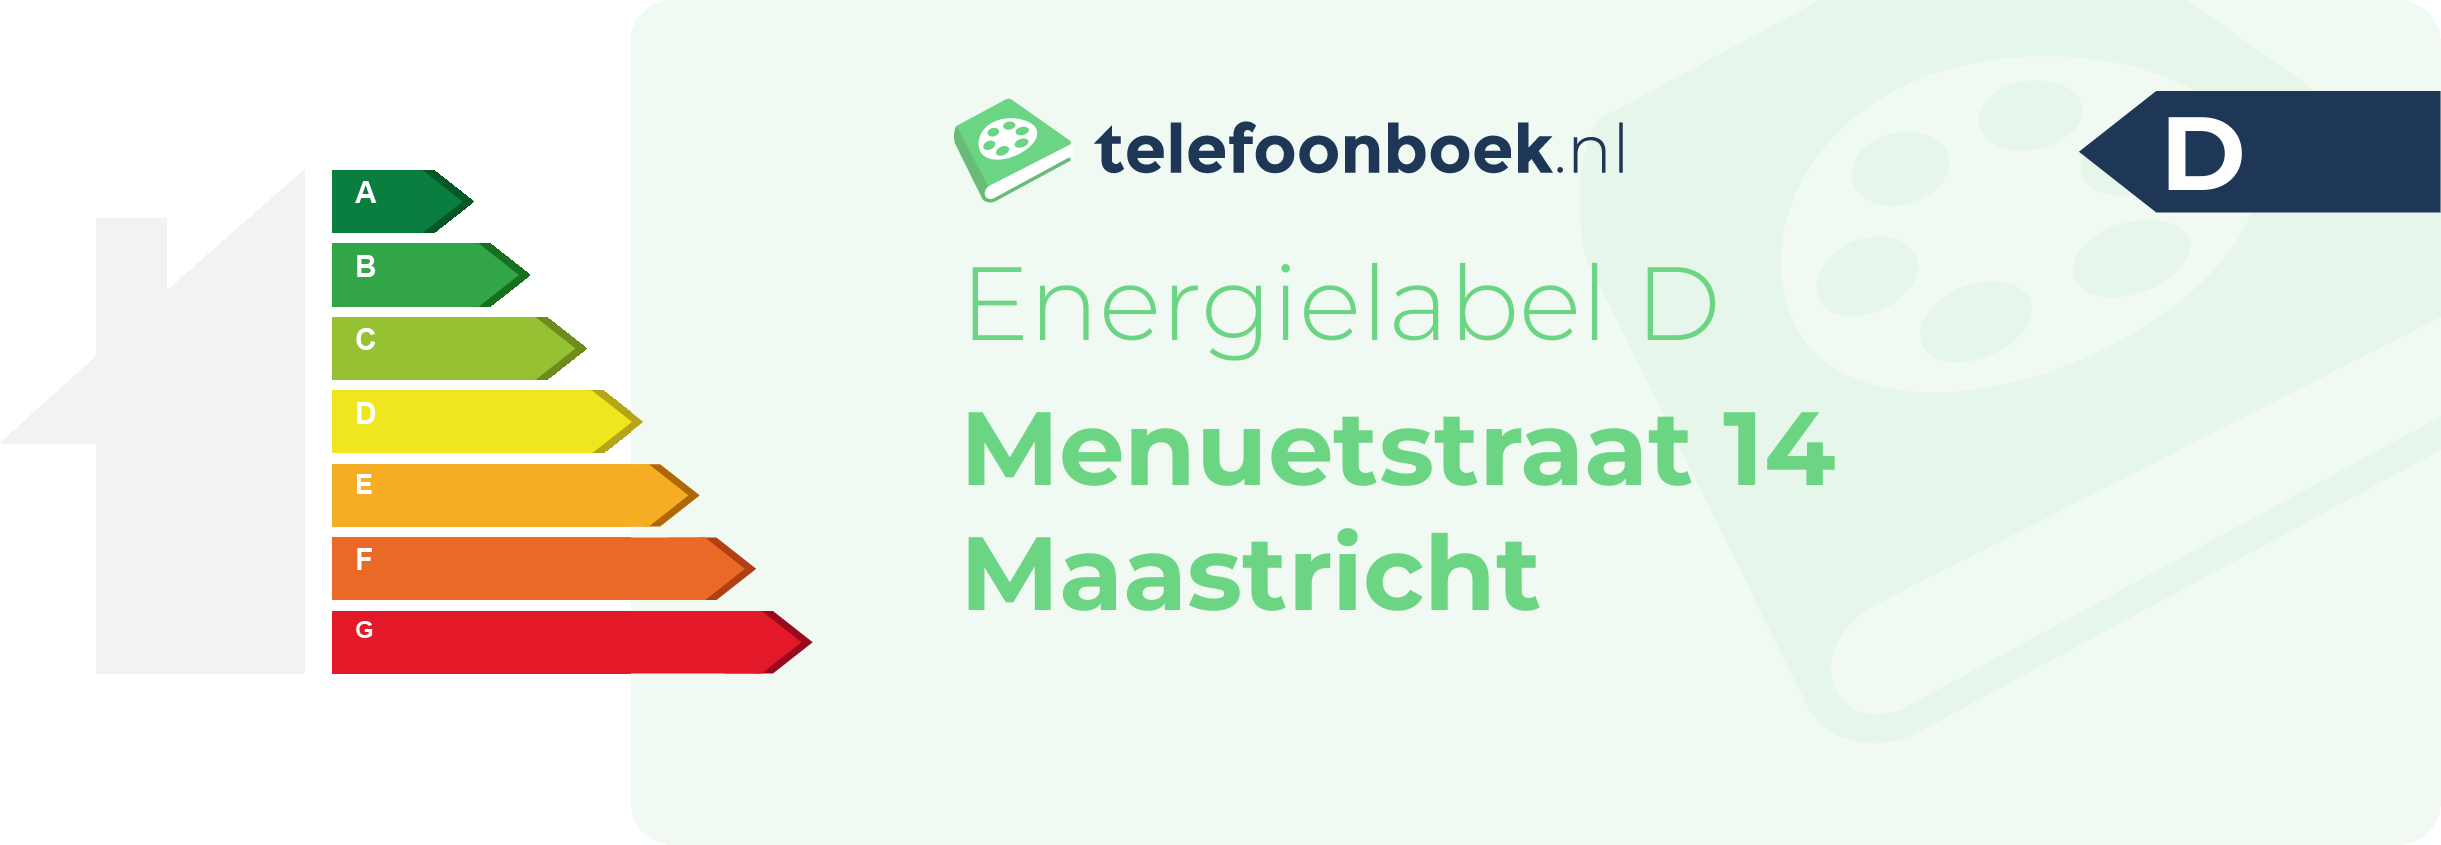 Energielabel Menuetstraat 14 Maastricht